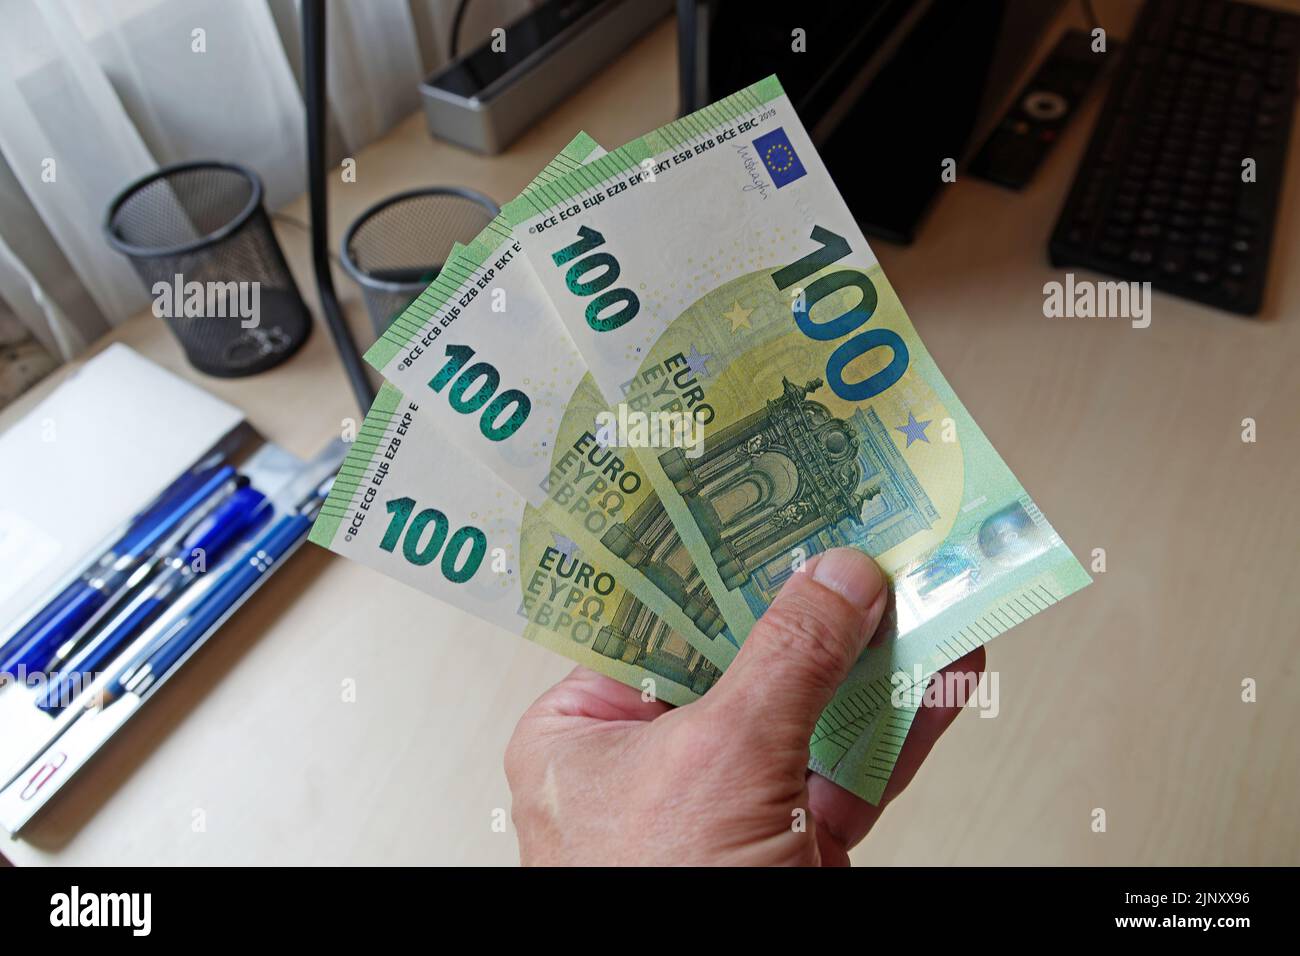 Foto simbolica: Pacchetto di soccorso in Germania per l'aumento dei costi energetici: Trecento euro di bollette in mano Foto Stock